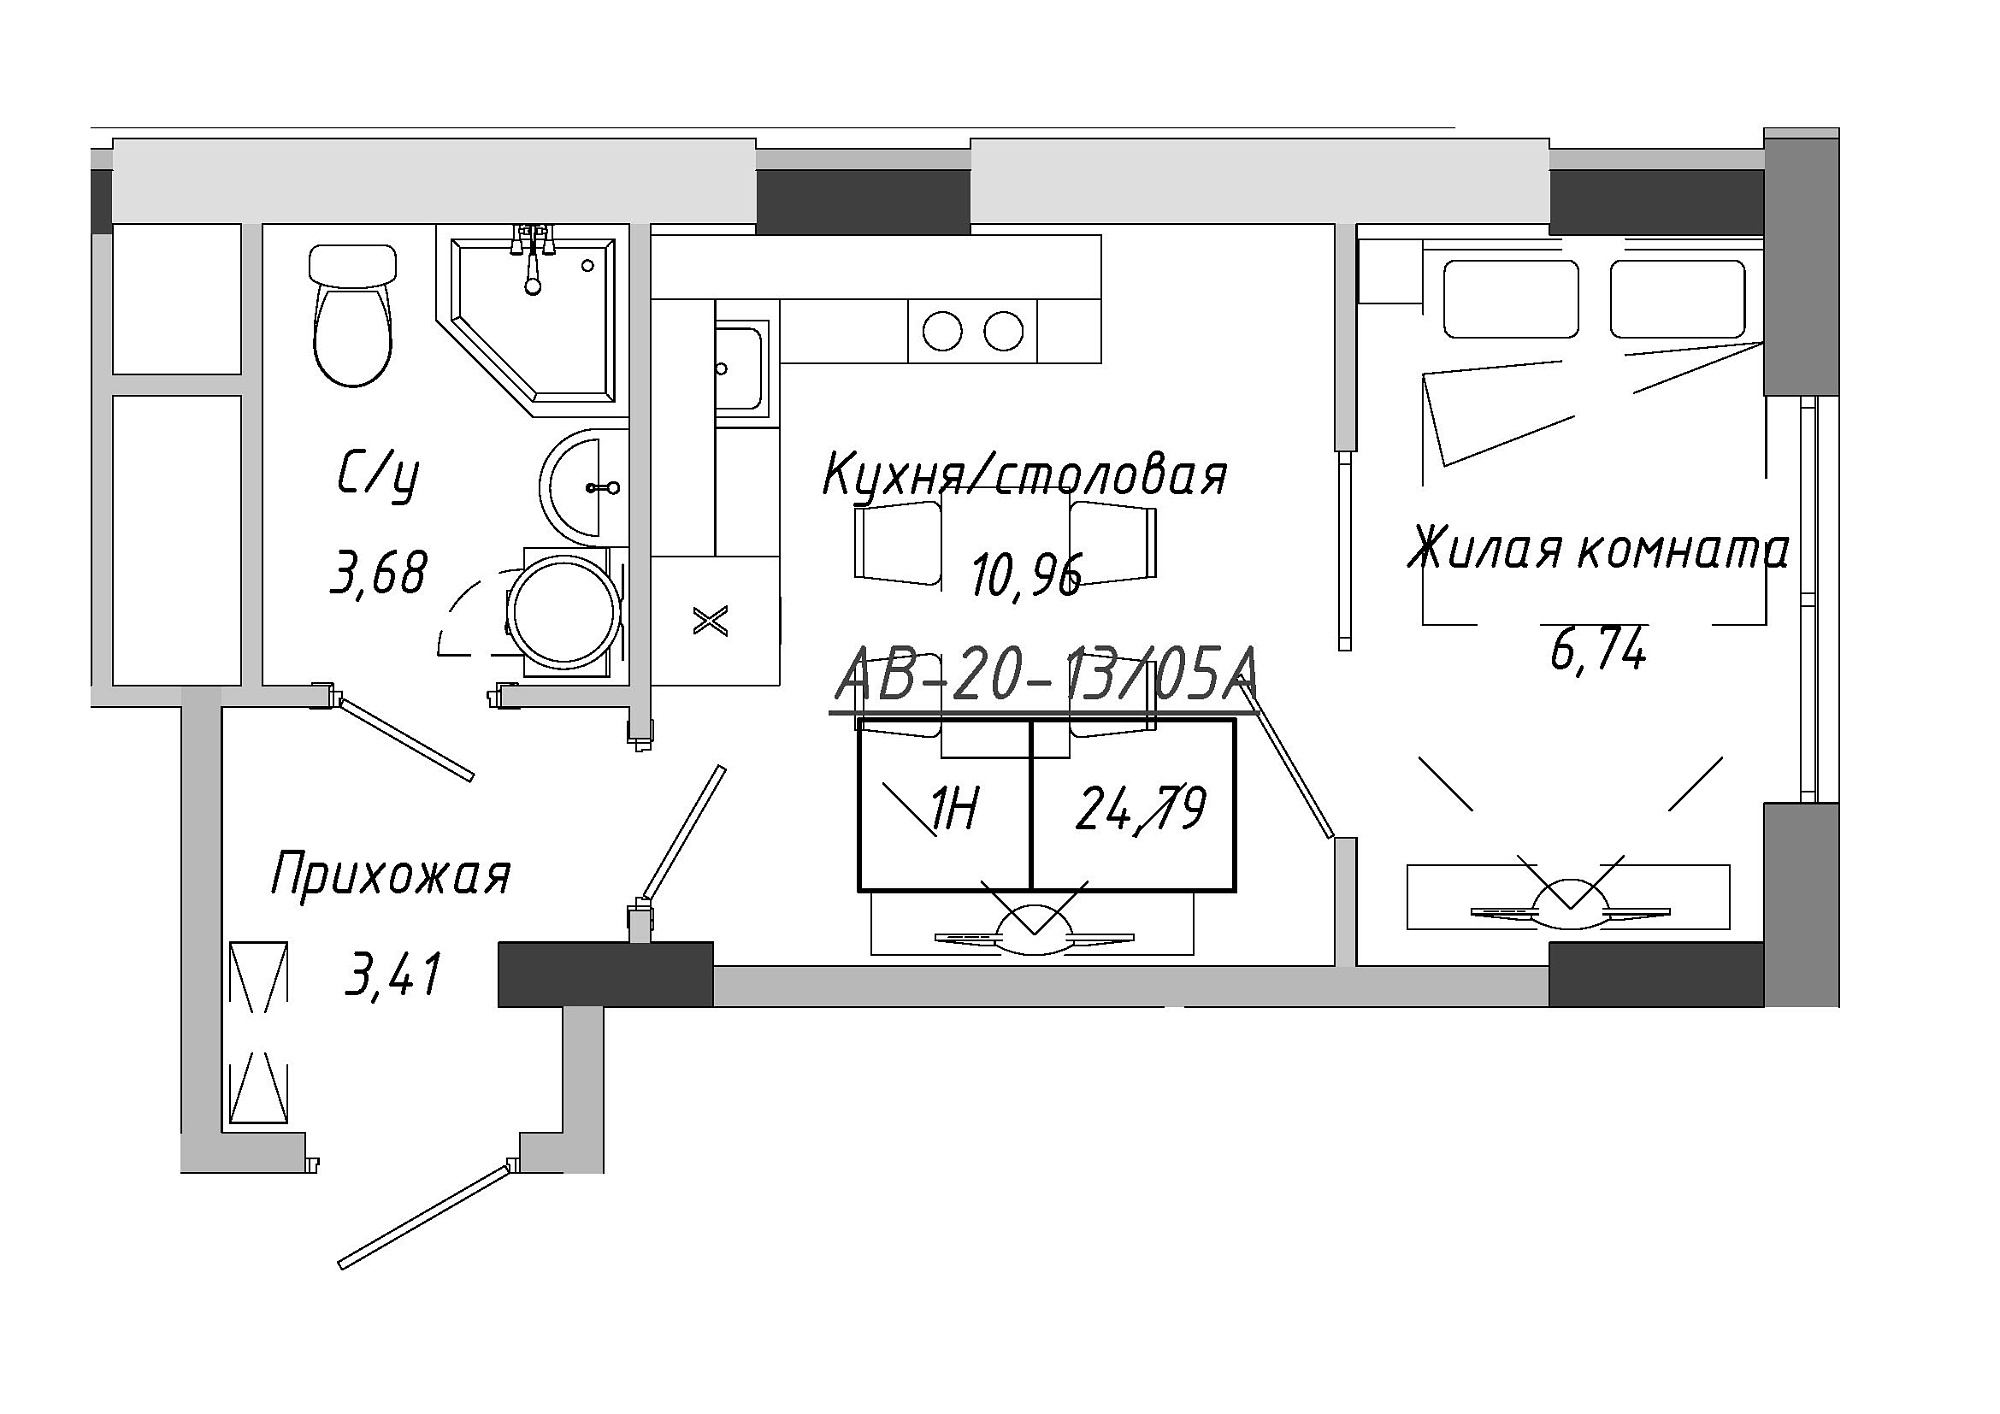 Планування 1-к квартира площею 24.79м2, AB-20-13/0105a.